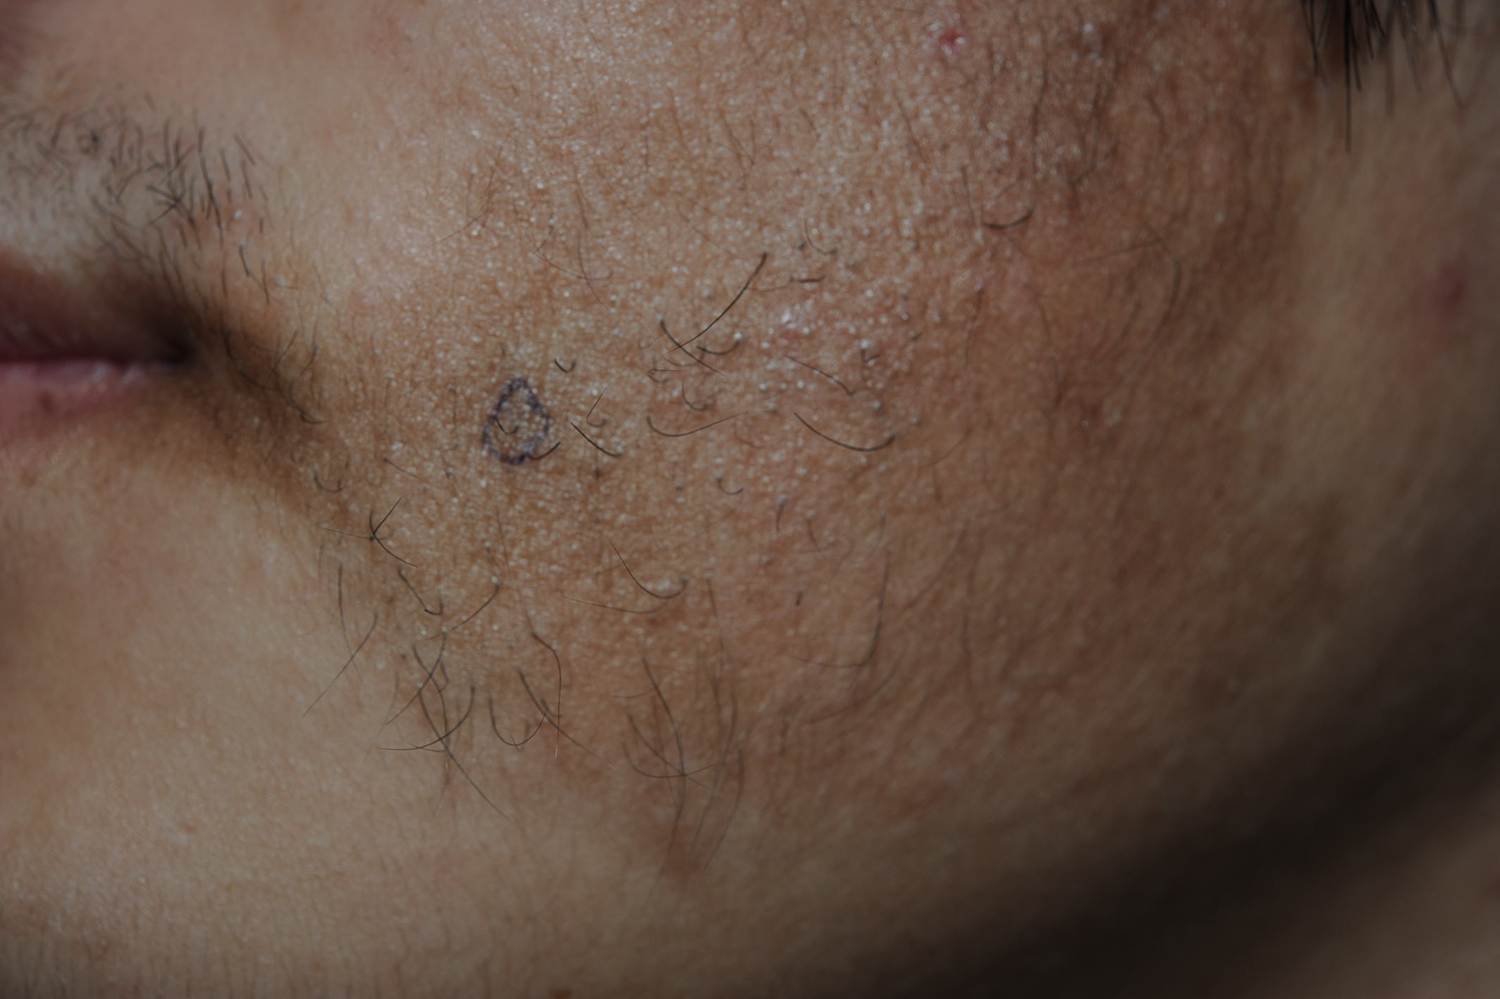 becker痣高出皮肤表面,边界不规则,表面可以伴有多毛及颗粒状毛周角化